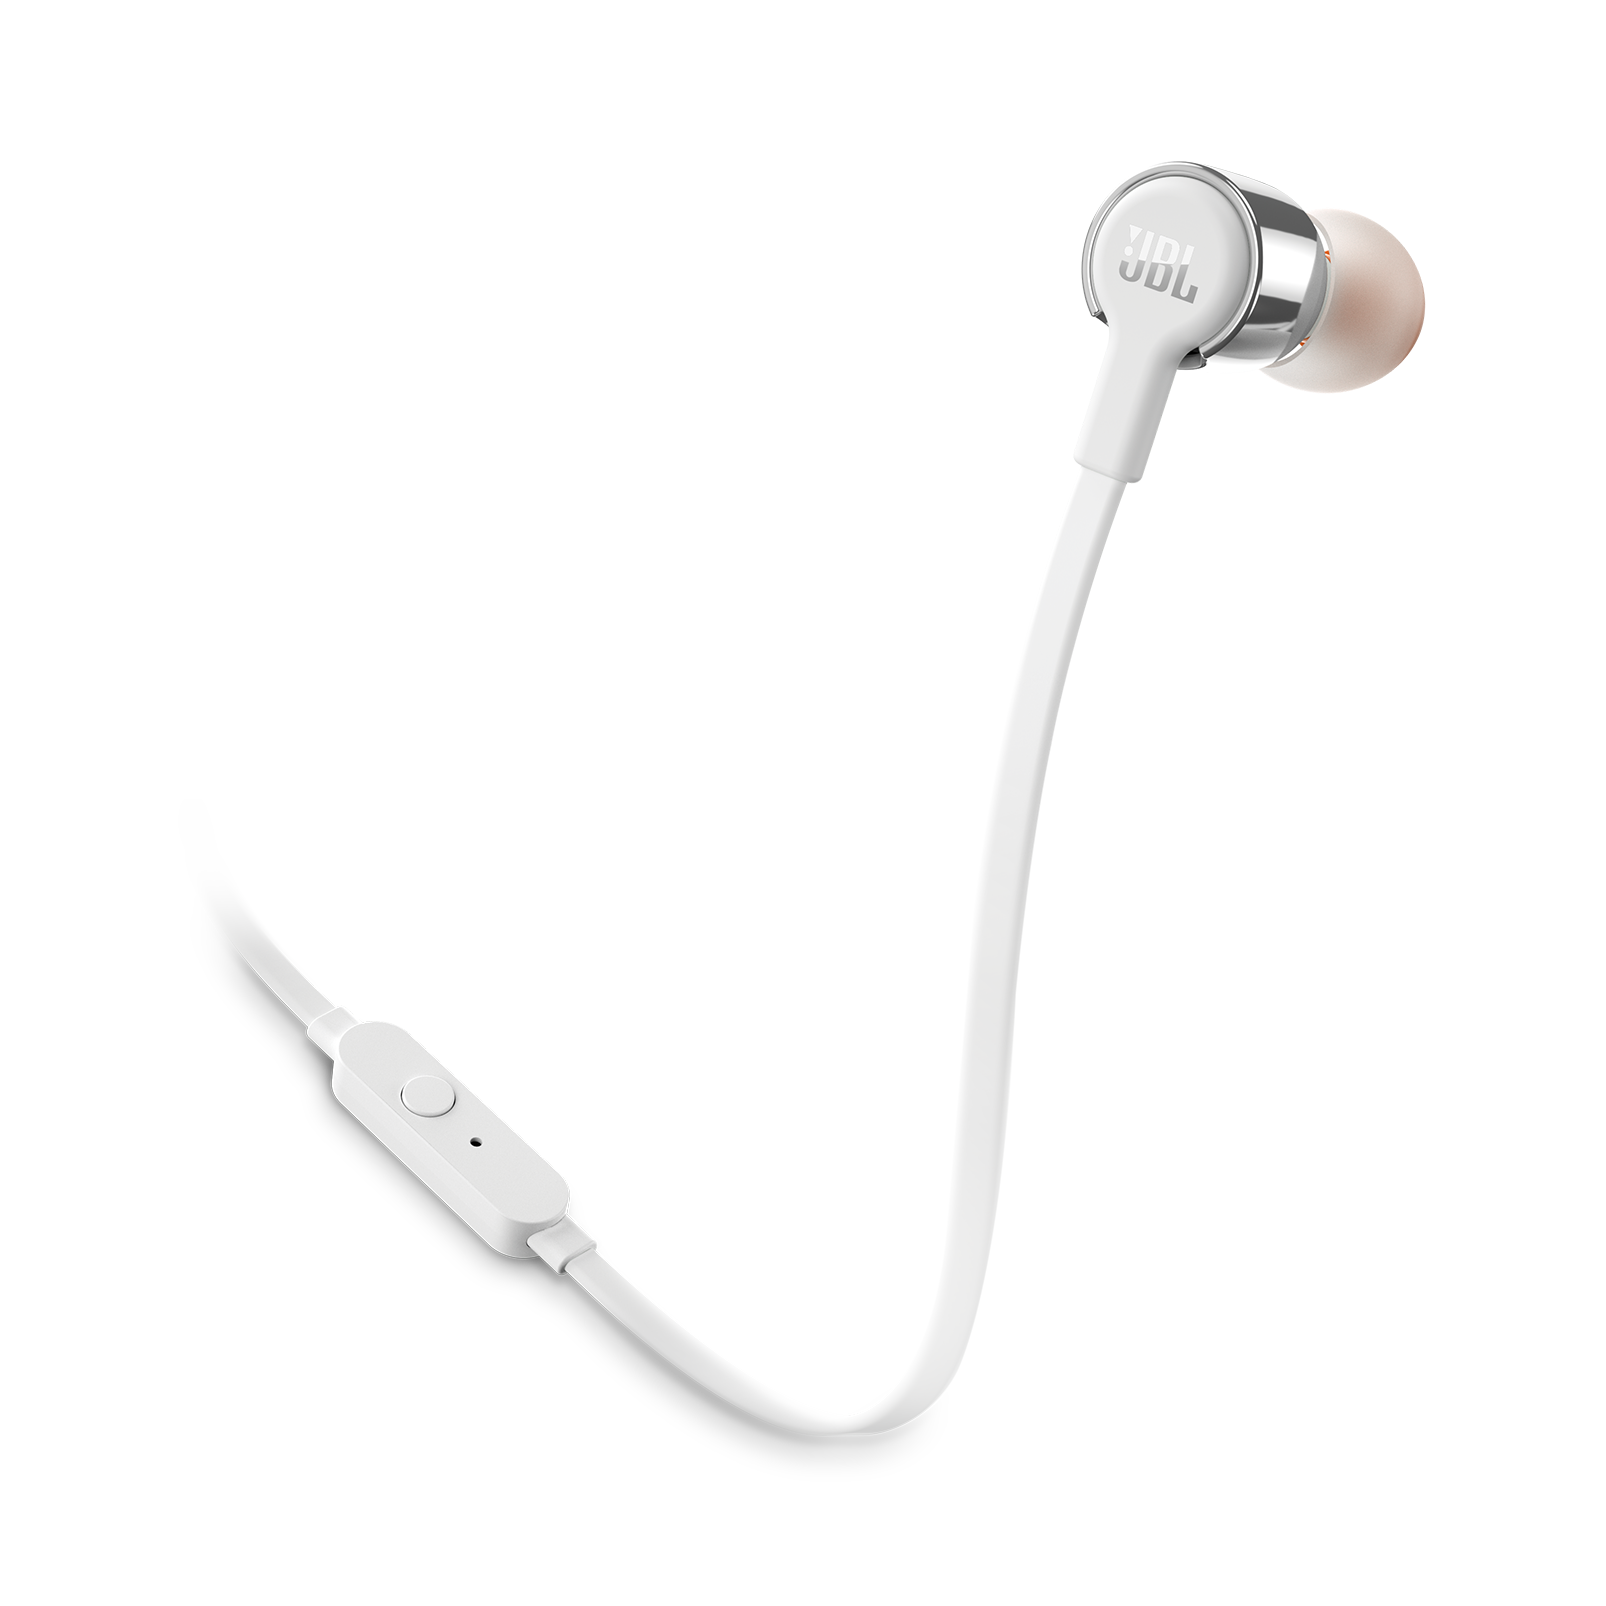 JBL T210 In-ear-kuulokkeet